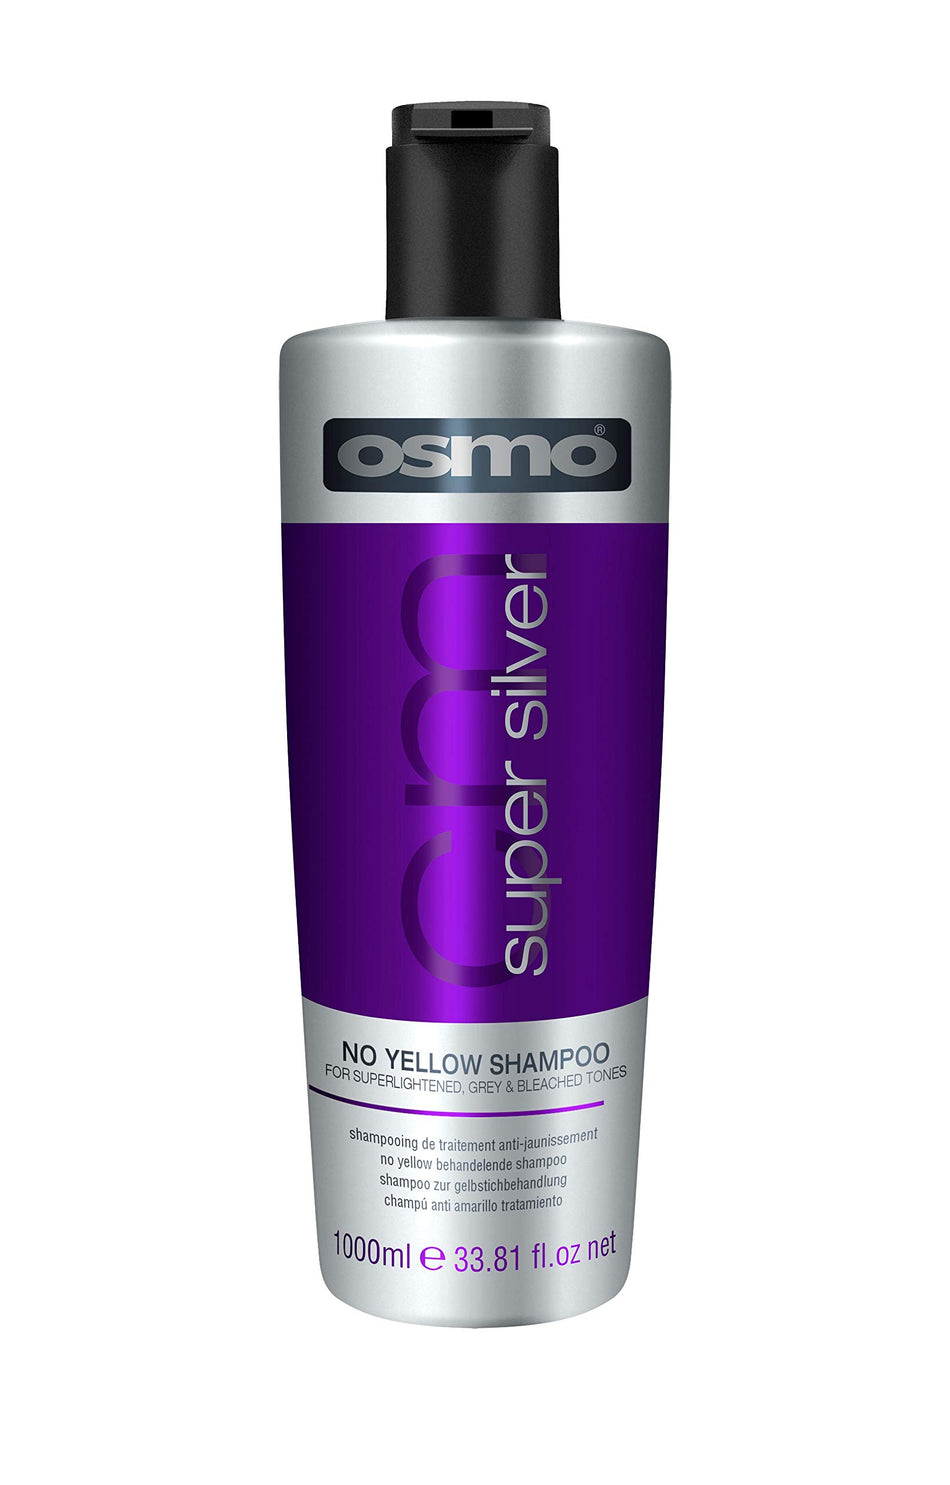 OSMO Super Silver No Yellow Shampoo, 1000 ml